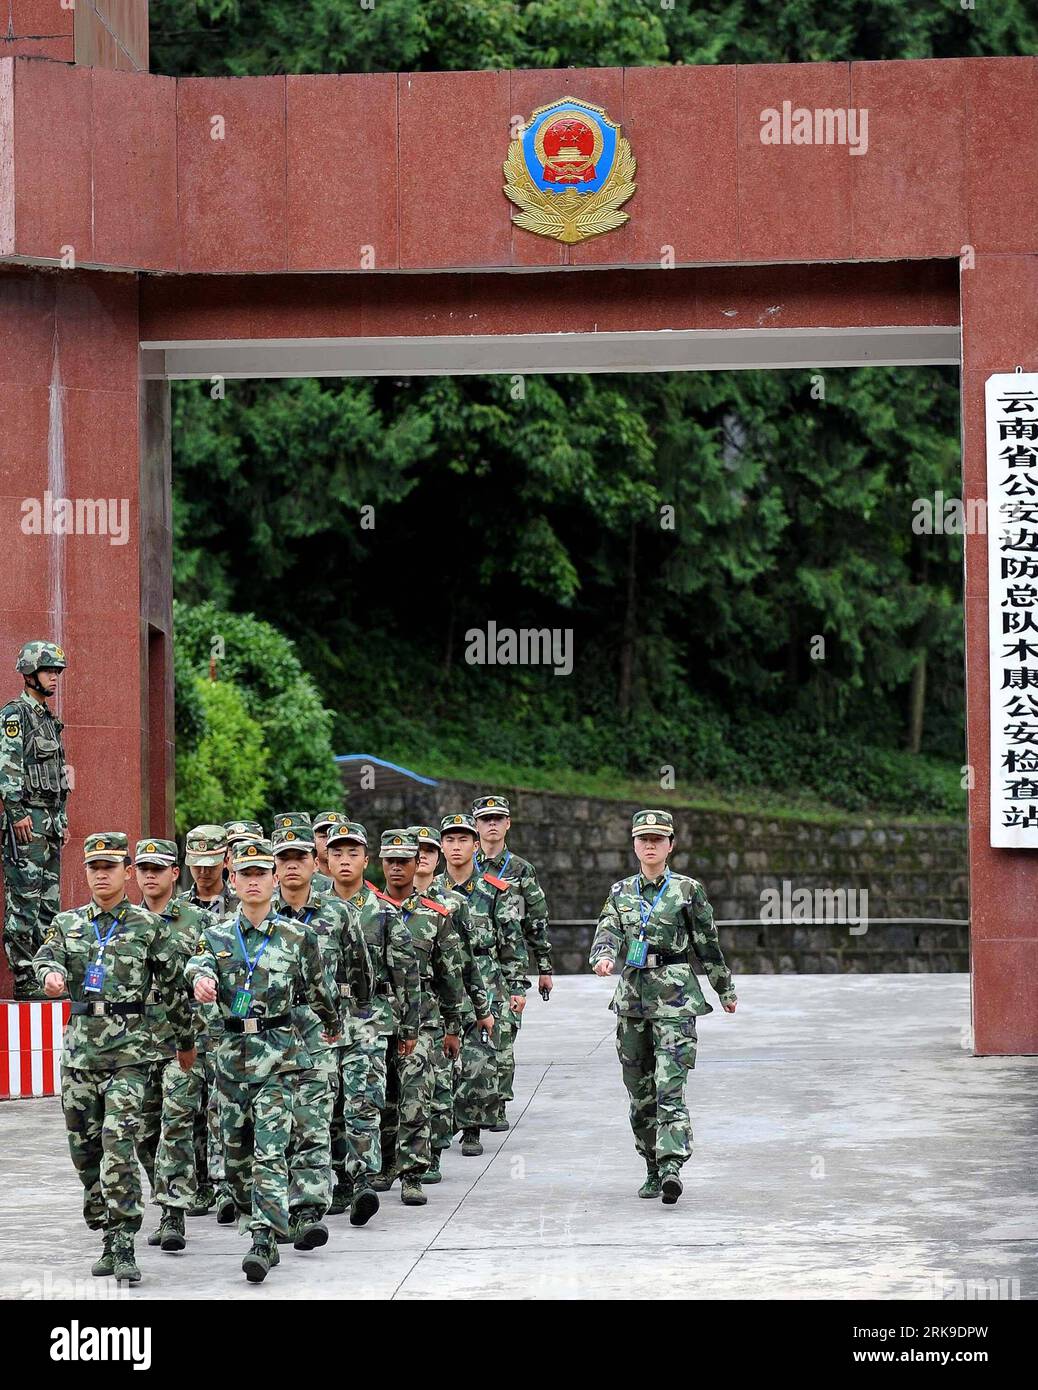 Bildnummer: 54178199 Datum: 24.06.2010 Copyright: imago/Xinhua (100626) -- DEHONG(YUNNAN), 26 giugno 2010 (Xinhua) -- soldati si preparano a portare avanti un'operazione antidroga in un posto di blocco nella prefettura autonoma di dai-Jingpo di Dehong, nella provincia dello Yunnan della Cina sud-occidentale, 24 giugno 2010. Il checkpoint di Dehong è stato fondato nel 1978 e si trova vicino al Myanmar e all'area del Triangolo d'Oro, la famosa base di produzione di droga. Più di 2000 veicoli vengono ispezionati ogni giorno e vari farmaci di oltre 1 tonnellata vengono confiscati ogni anno al checkpoint. (Xinhua/Lin Yiguang) (zhs) (2)CHINA-YUNNAN-DRUG-poli Foto Stock